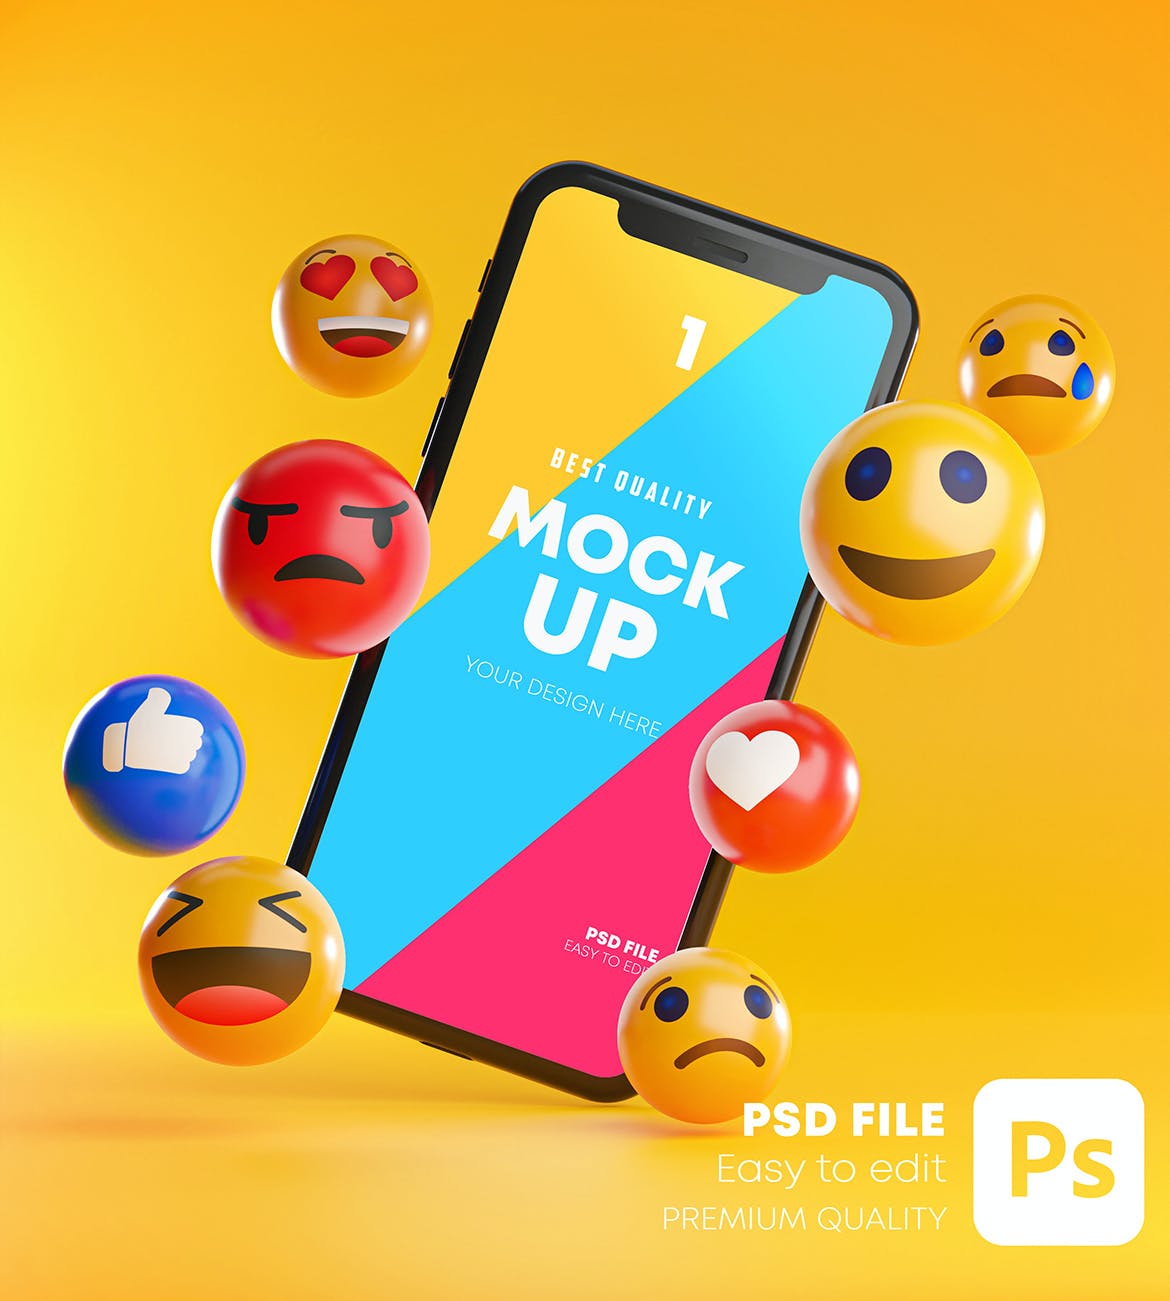 智能手机表情符号元素样机素材包 Smartphone Emoji Mockup Pack设计素材模板